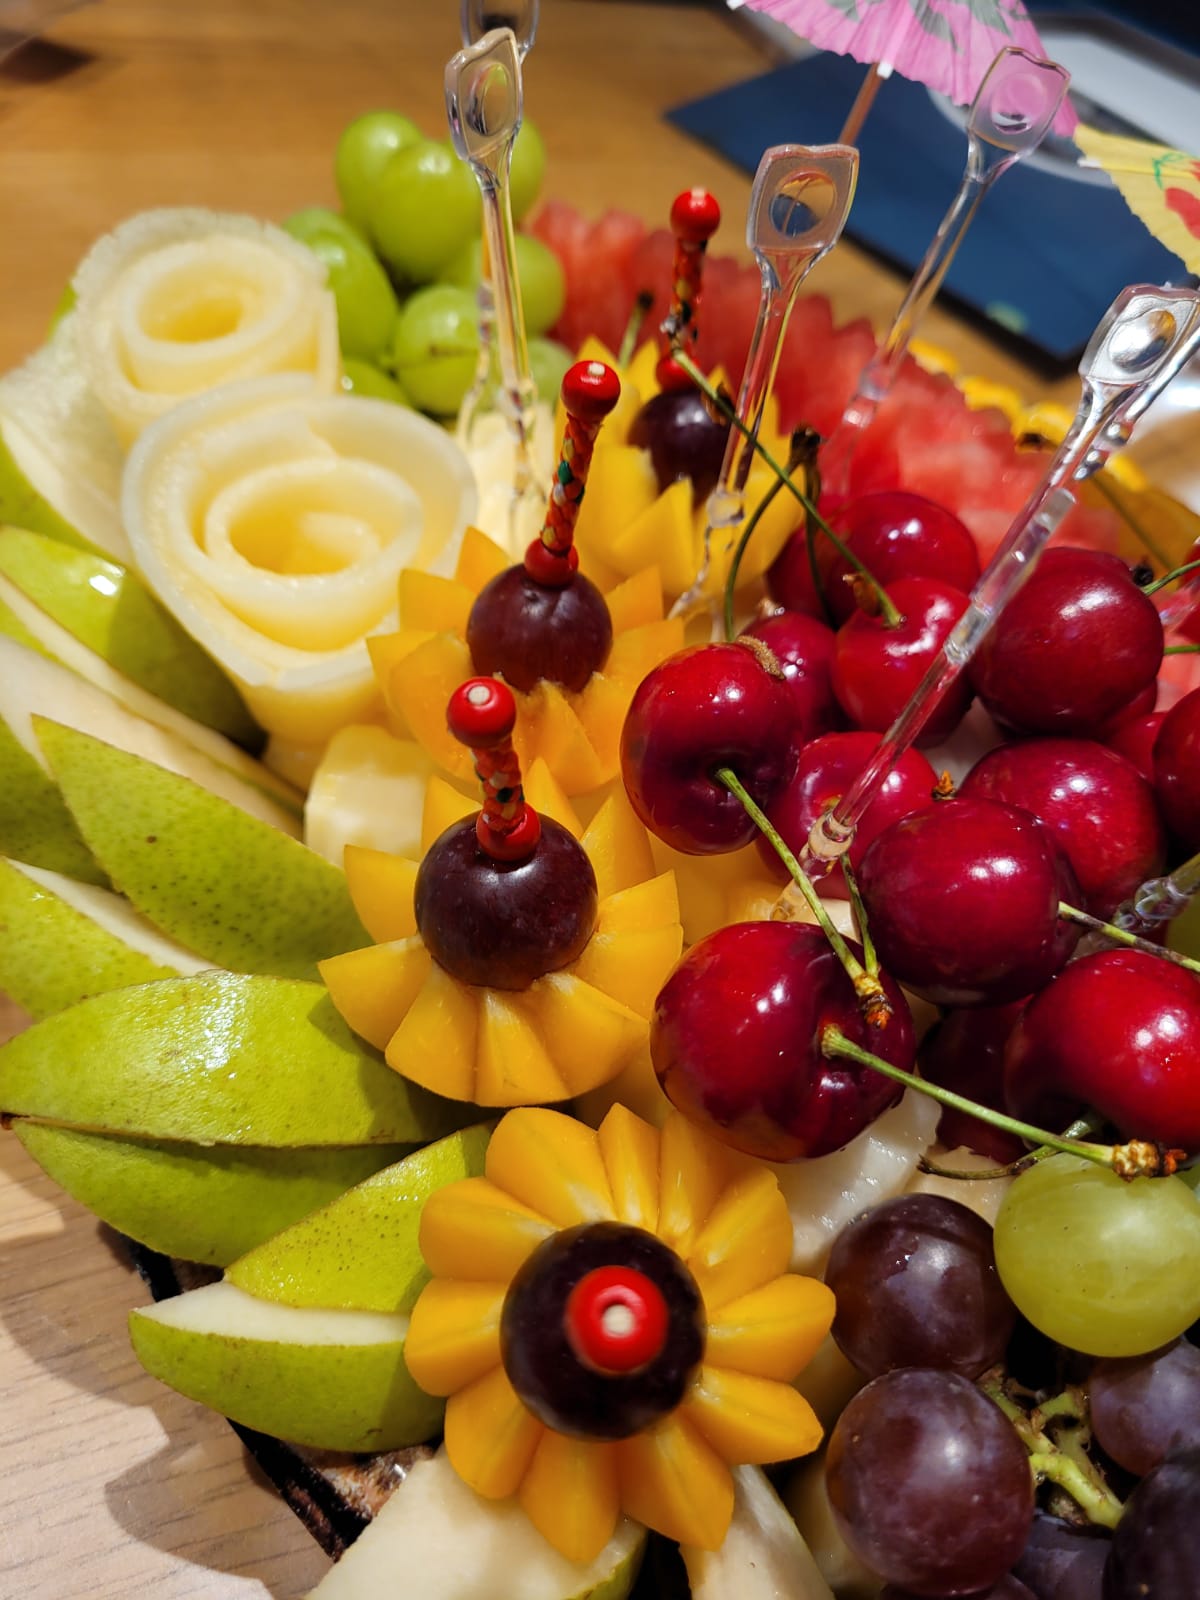 מתי ואיך לבצע הזמנה של מגשי פירות מיוחדים?